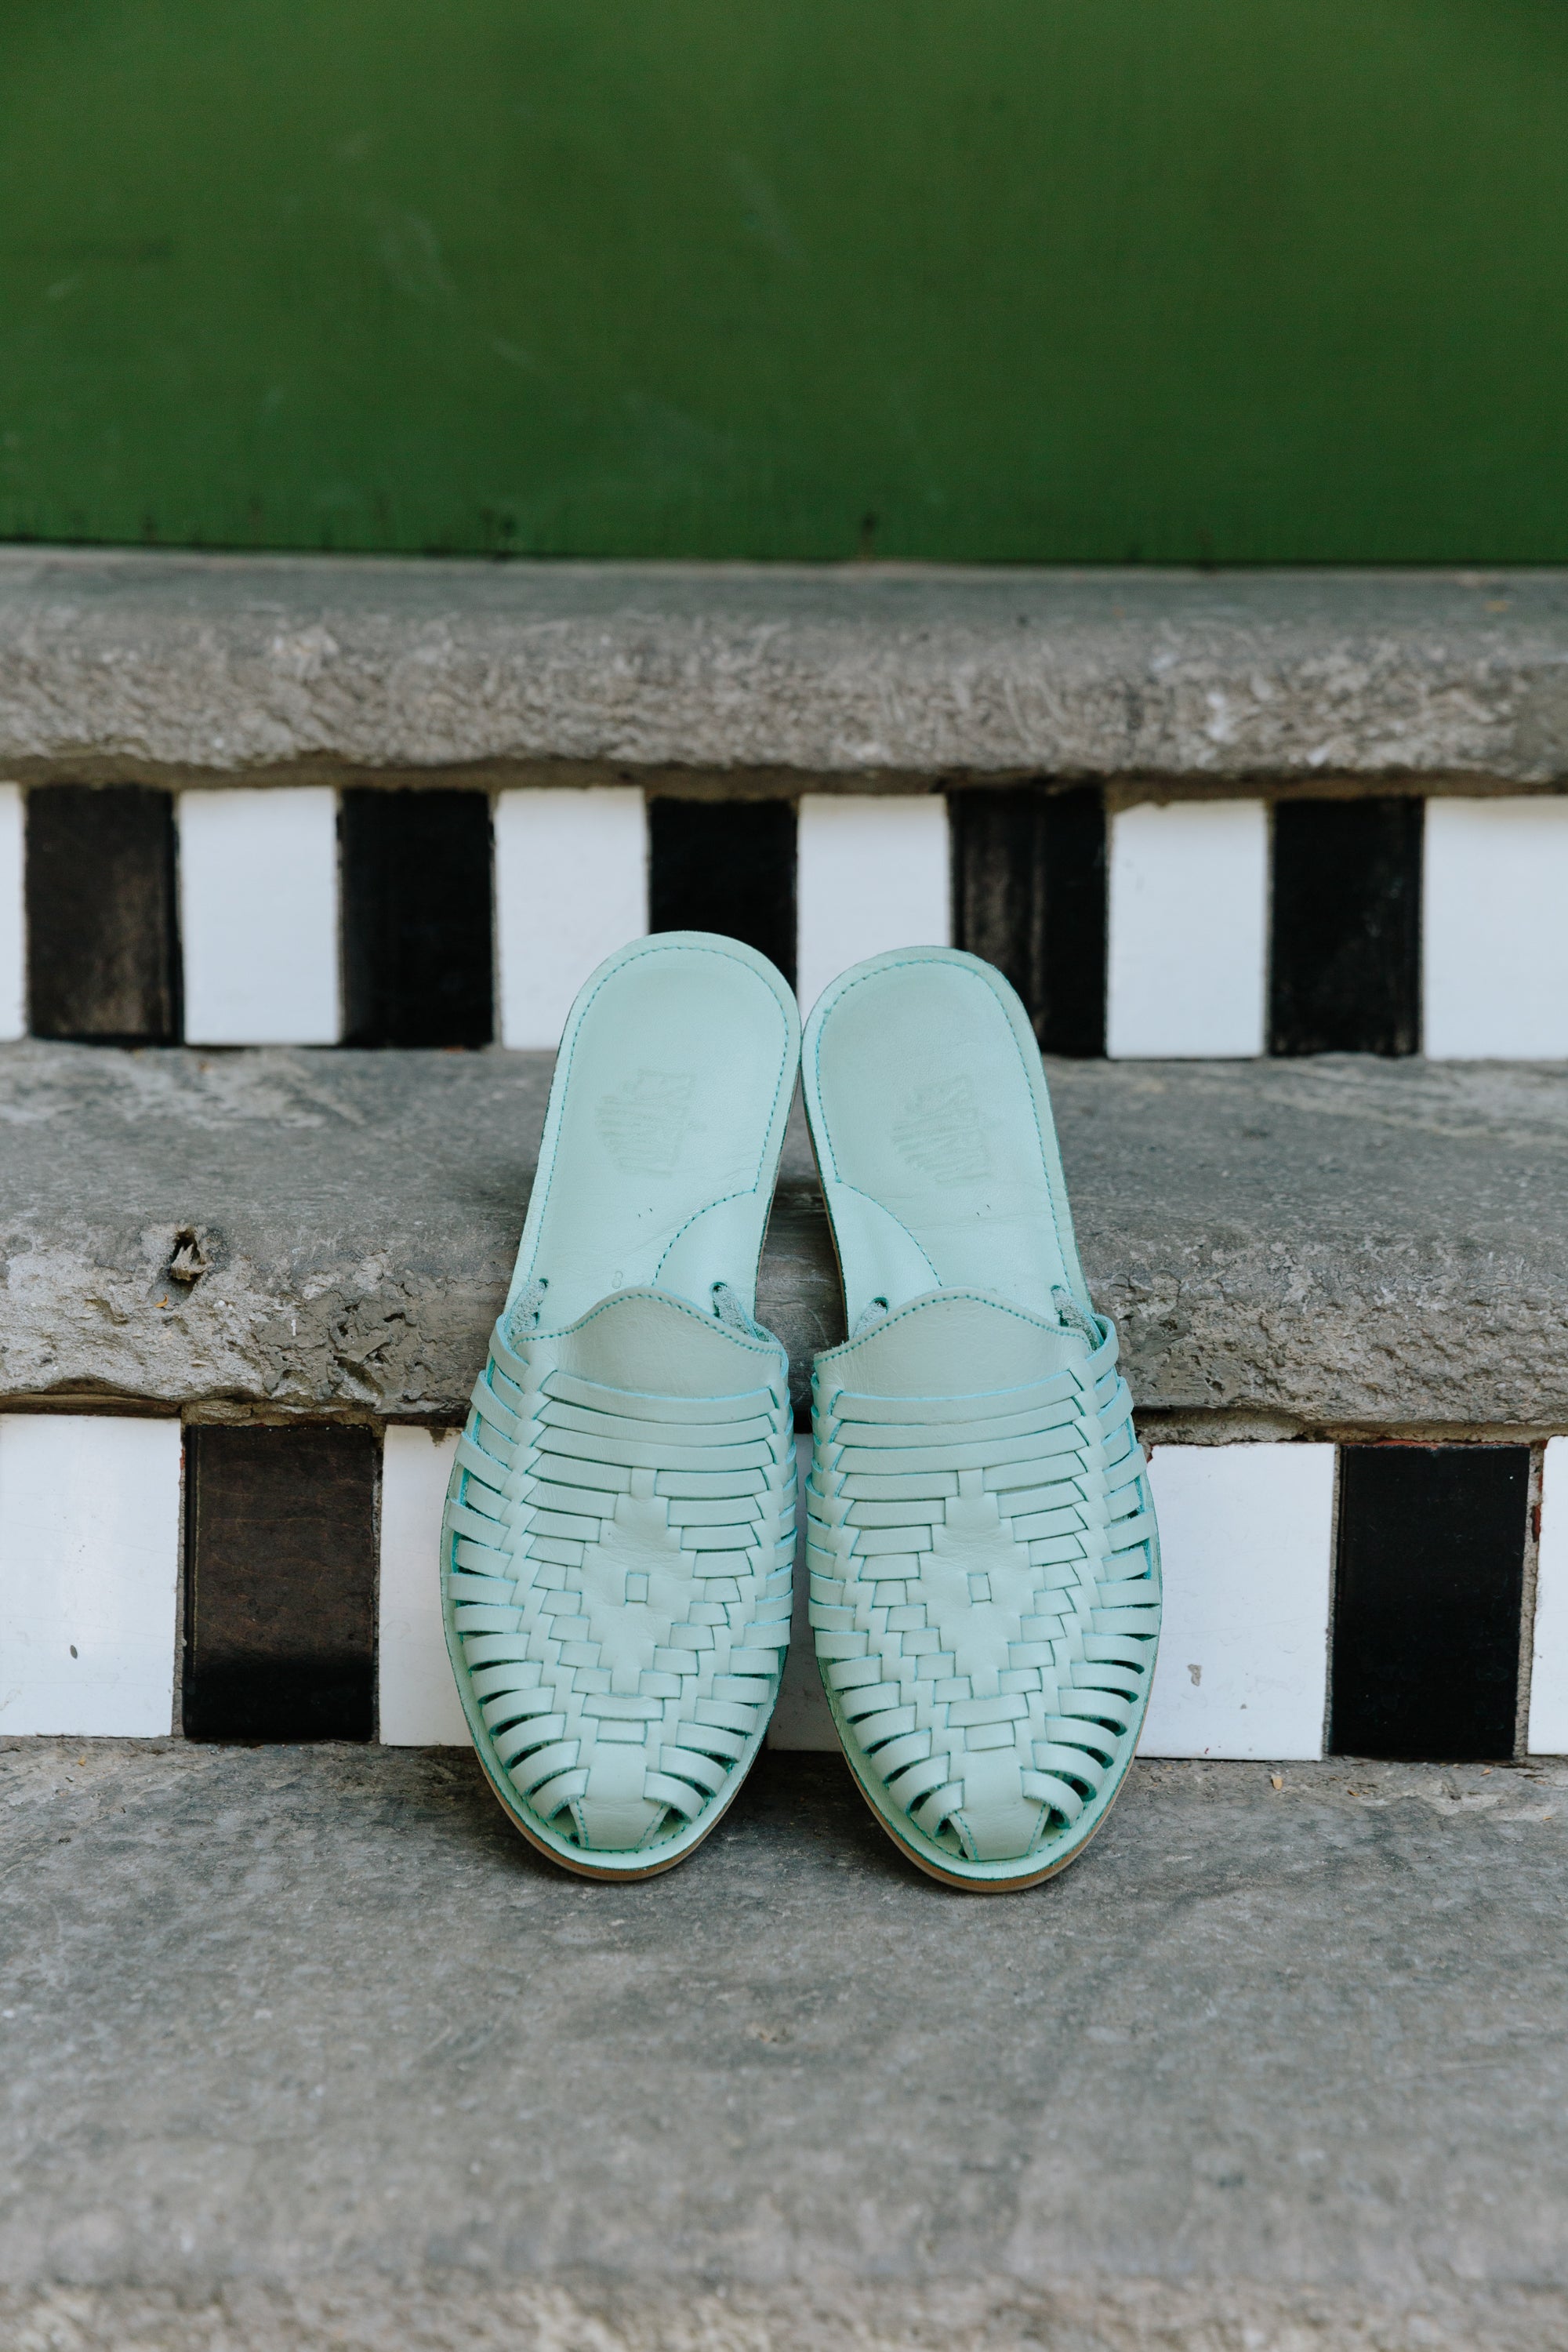 WELCOME TO ESPIRITU! The finest handwoven huarache sandals – Espiritu